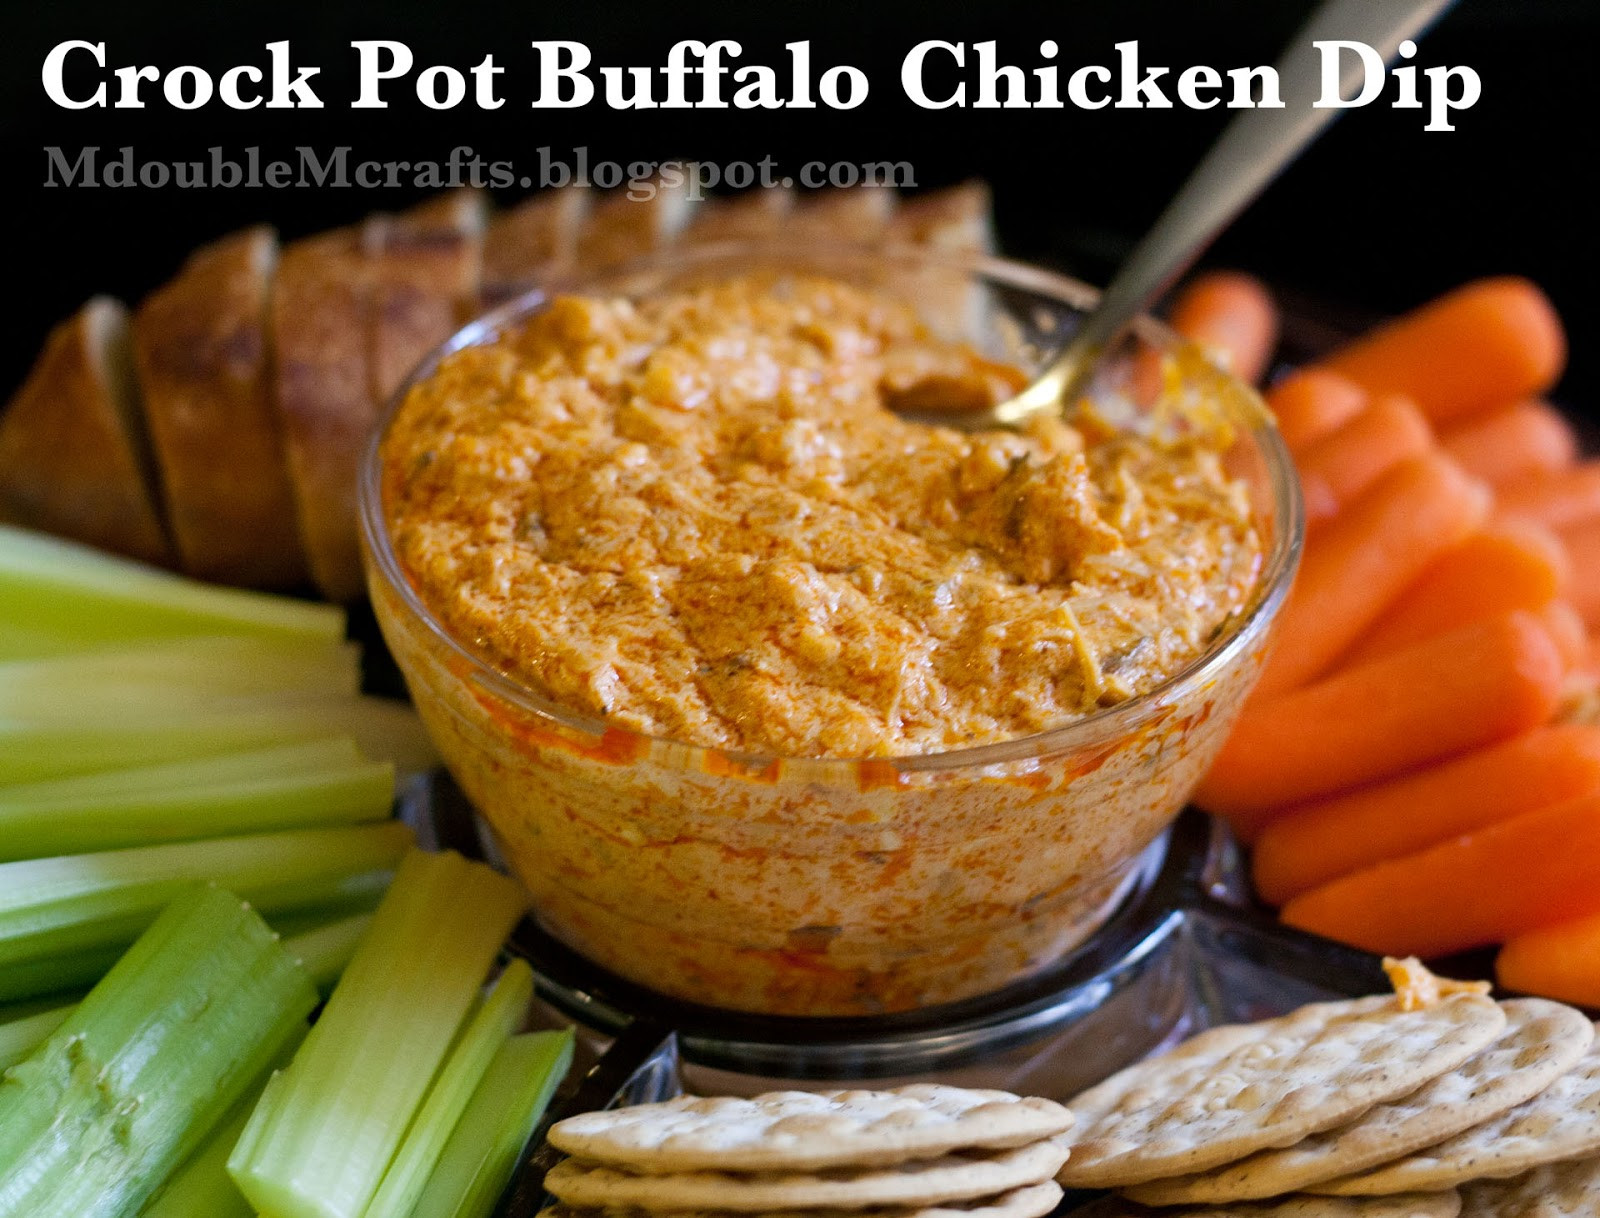 Buffalo Chicken Dip Crock Pot Recipes
 M double M Crock pot buffalo chicken dip recipe